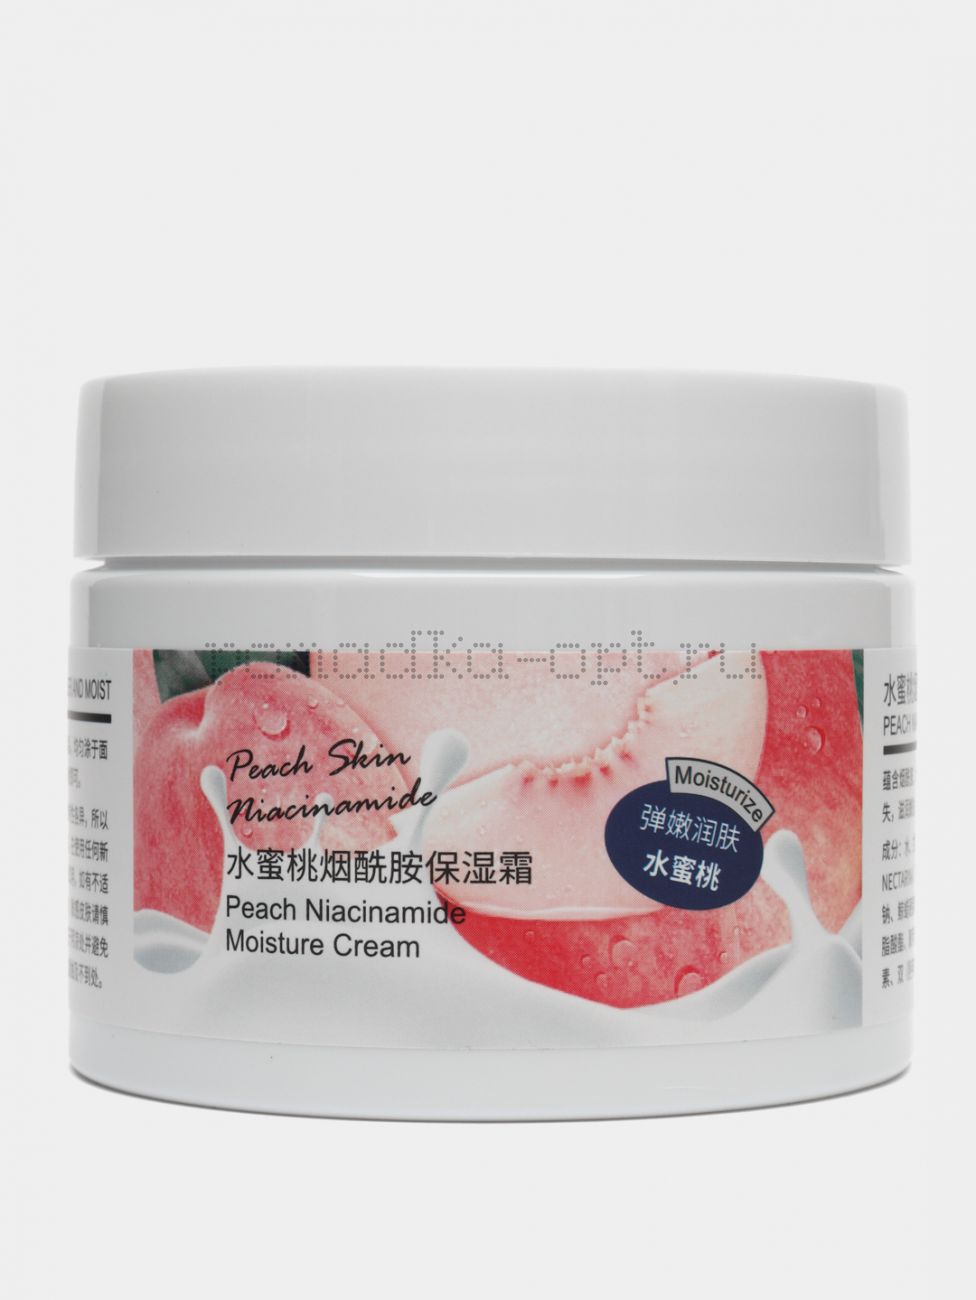 LIFTHENG / Многофункциональный питательный крем с ниацинамидом и экстрактом персика, Peach Skin, 140 гр